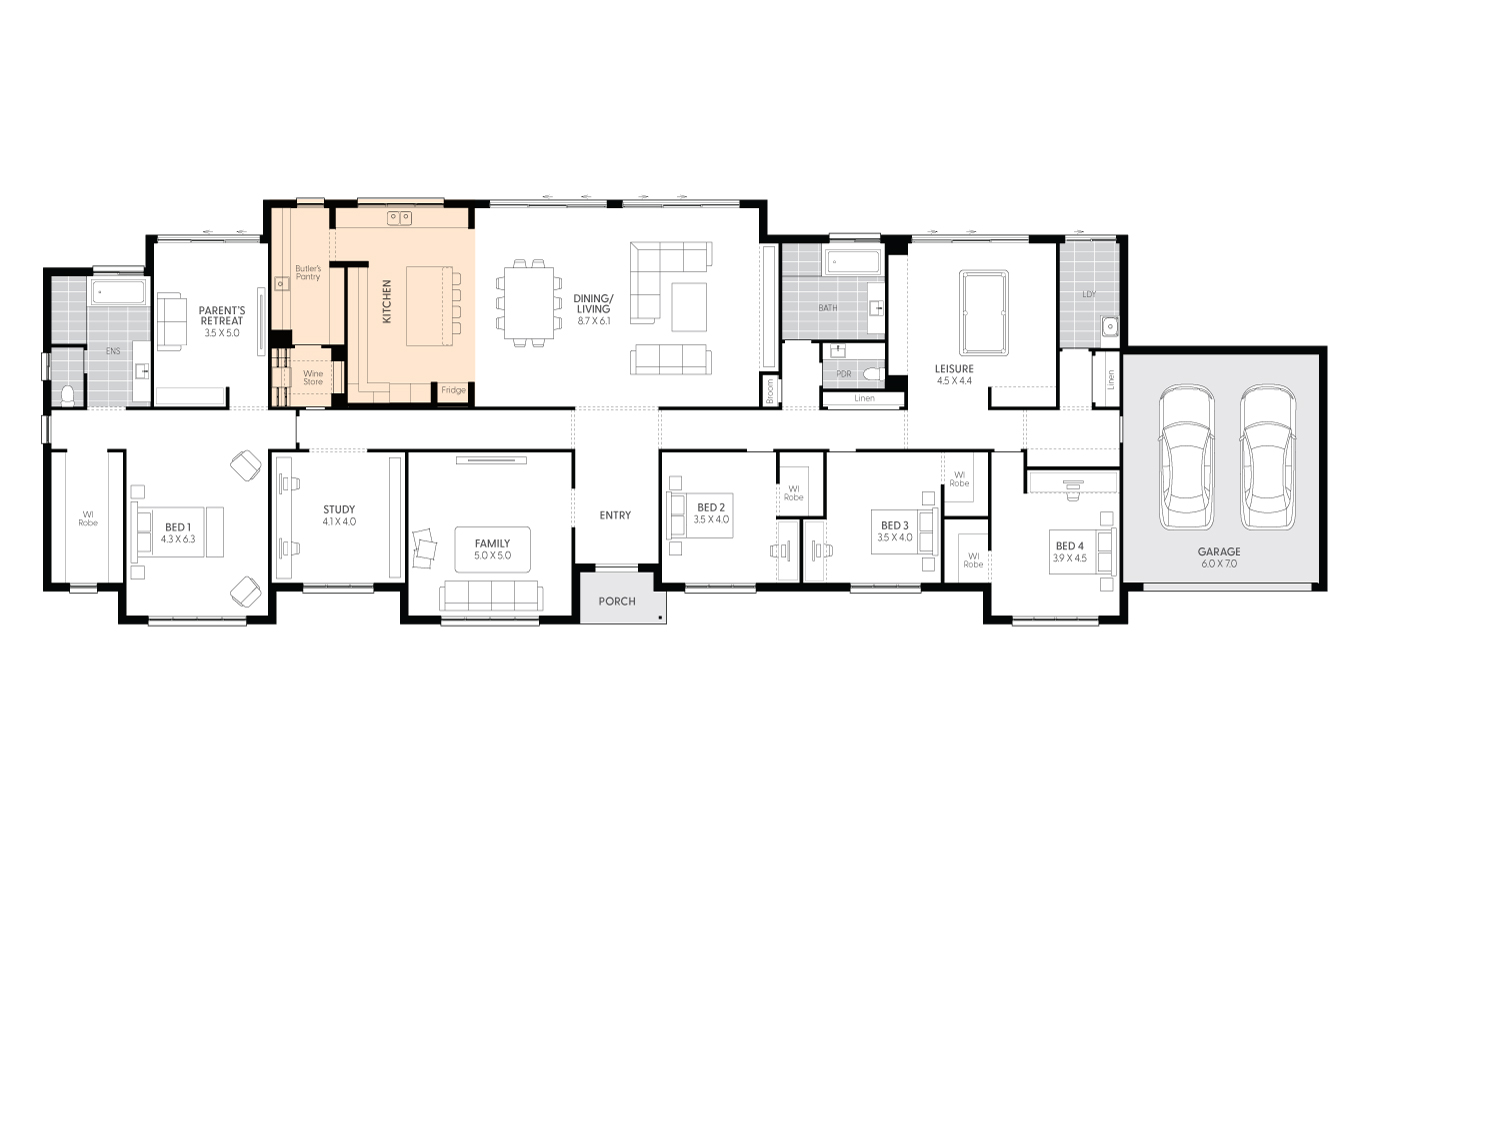 Sanford-47-floor-plan-ALTERNATE-KITCHEN-LAYOUT-AS-DISPLAYED-LHS_1.jpg 